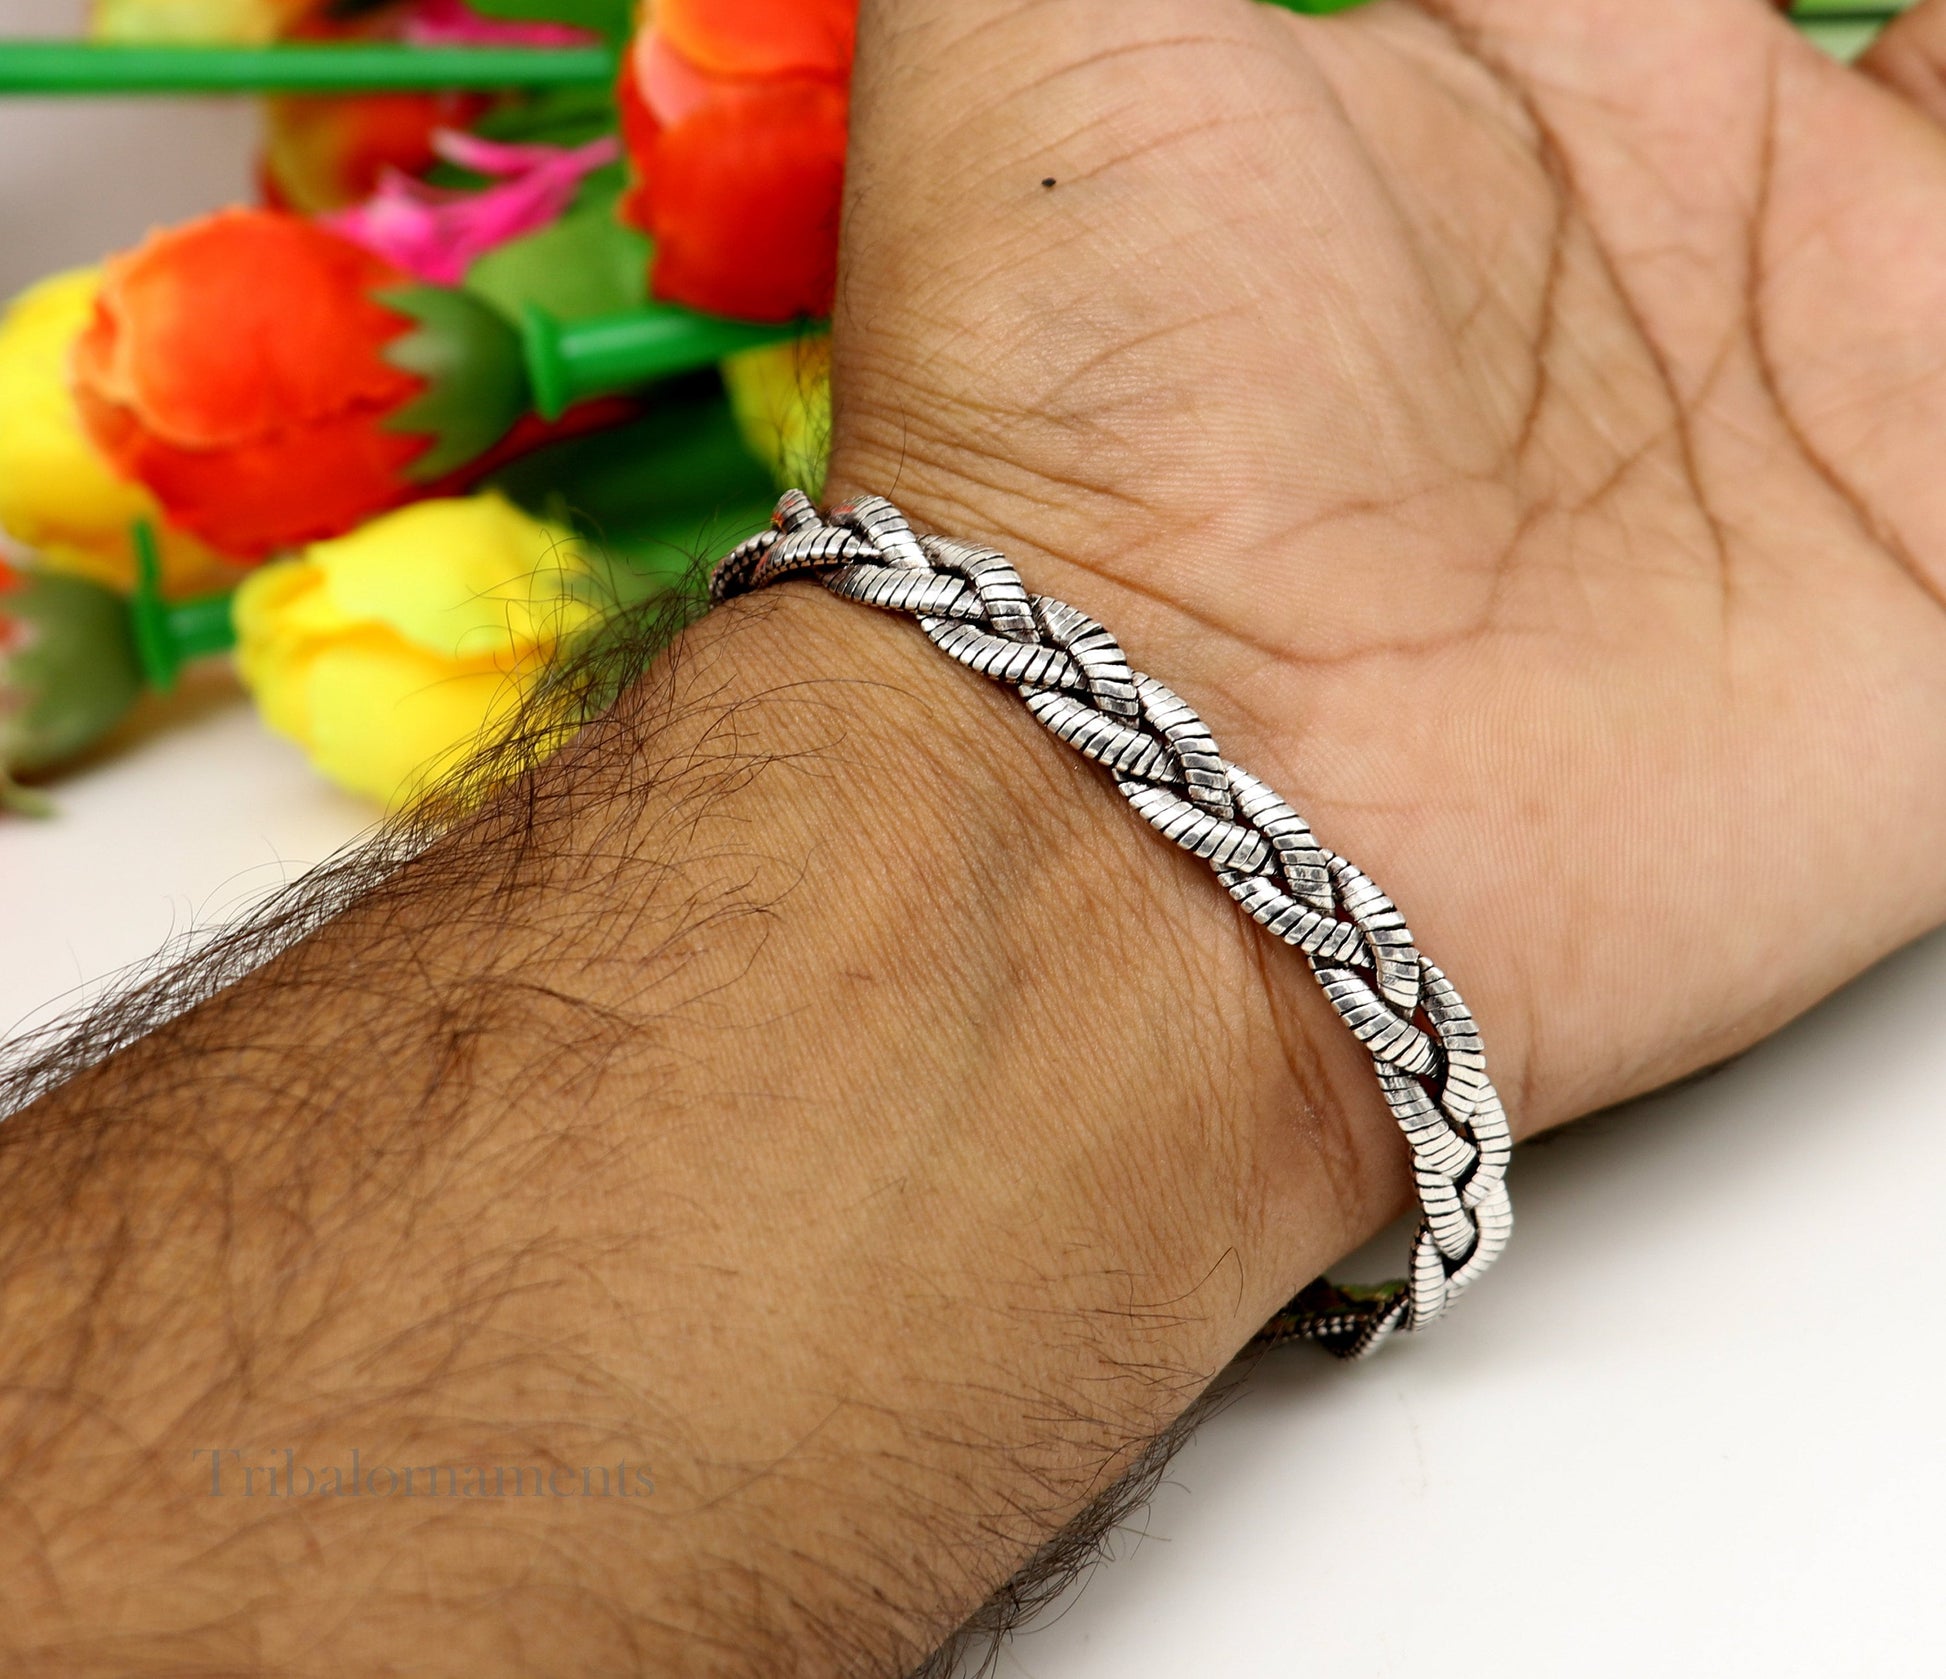 Men's snake chain twisted design bracelet, amazing 925 sterling silver stunning bracelet, best men's gifting bracelet from India nsbr390 - TRIBAL ORNAMENTS